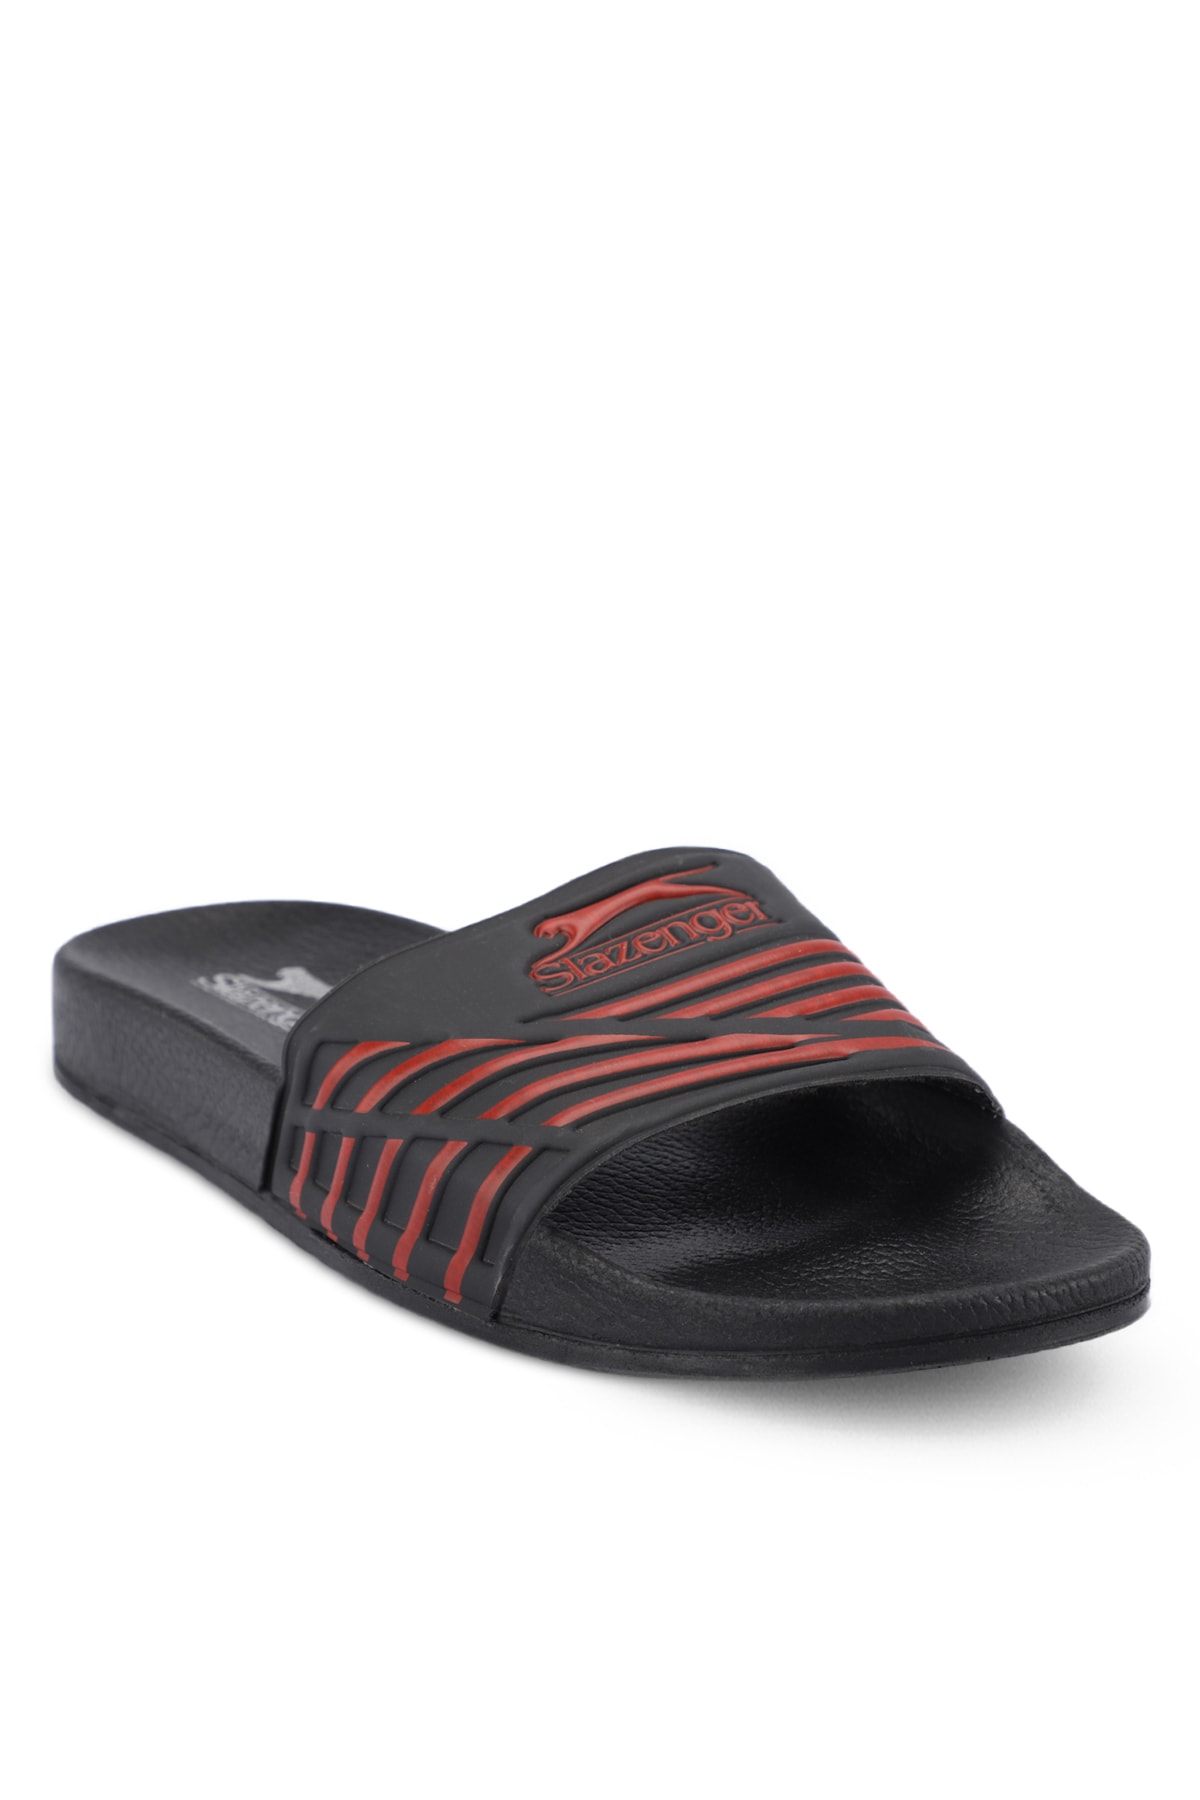 Slazenger FION Men's Slippers Black / Red